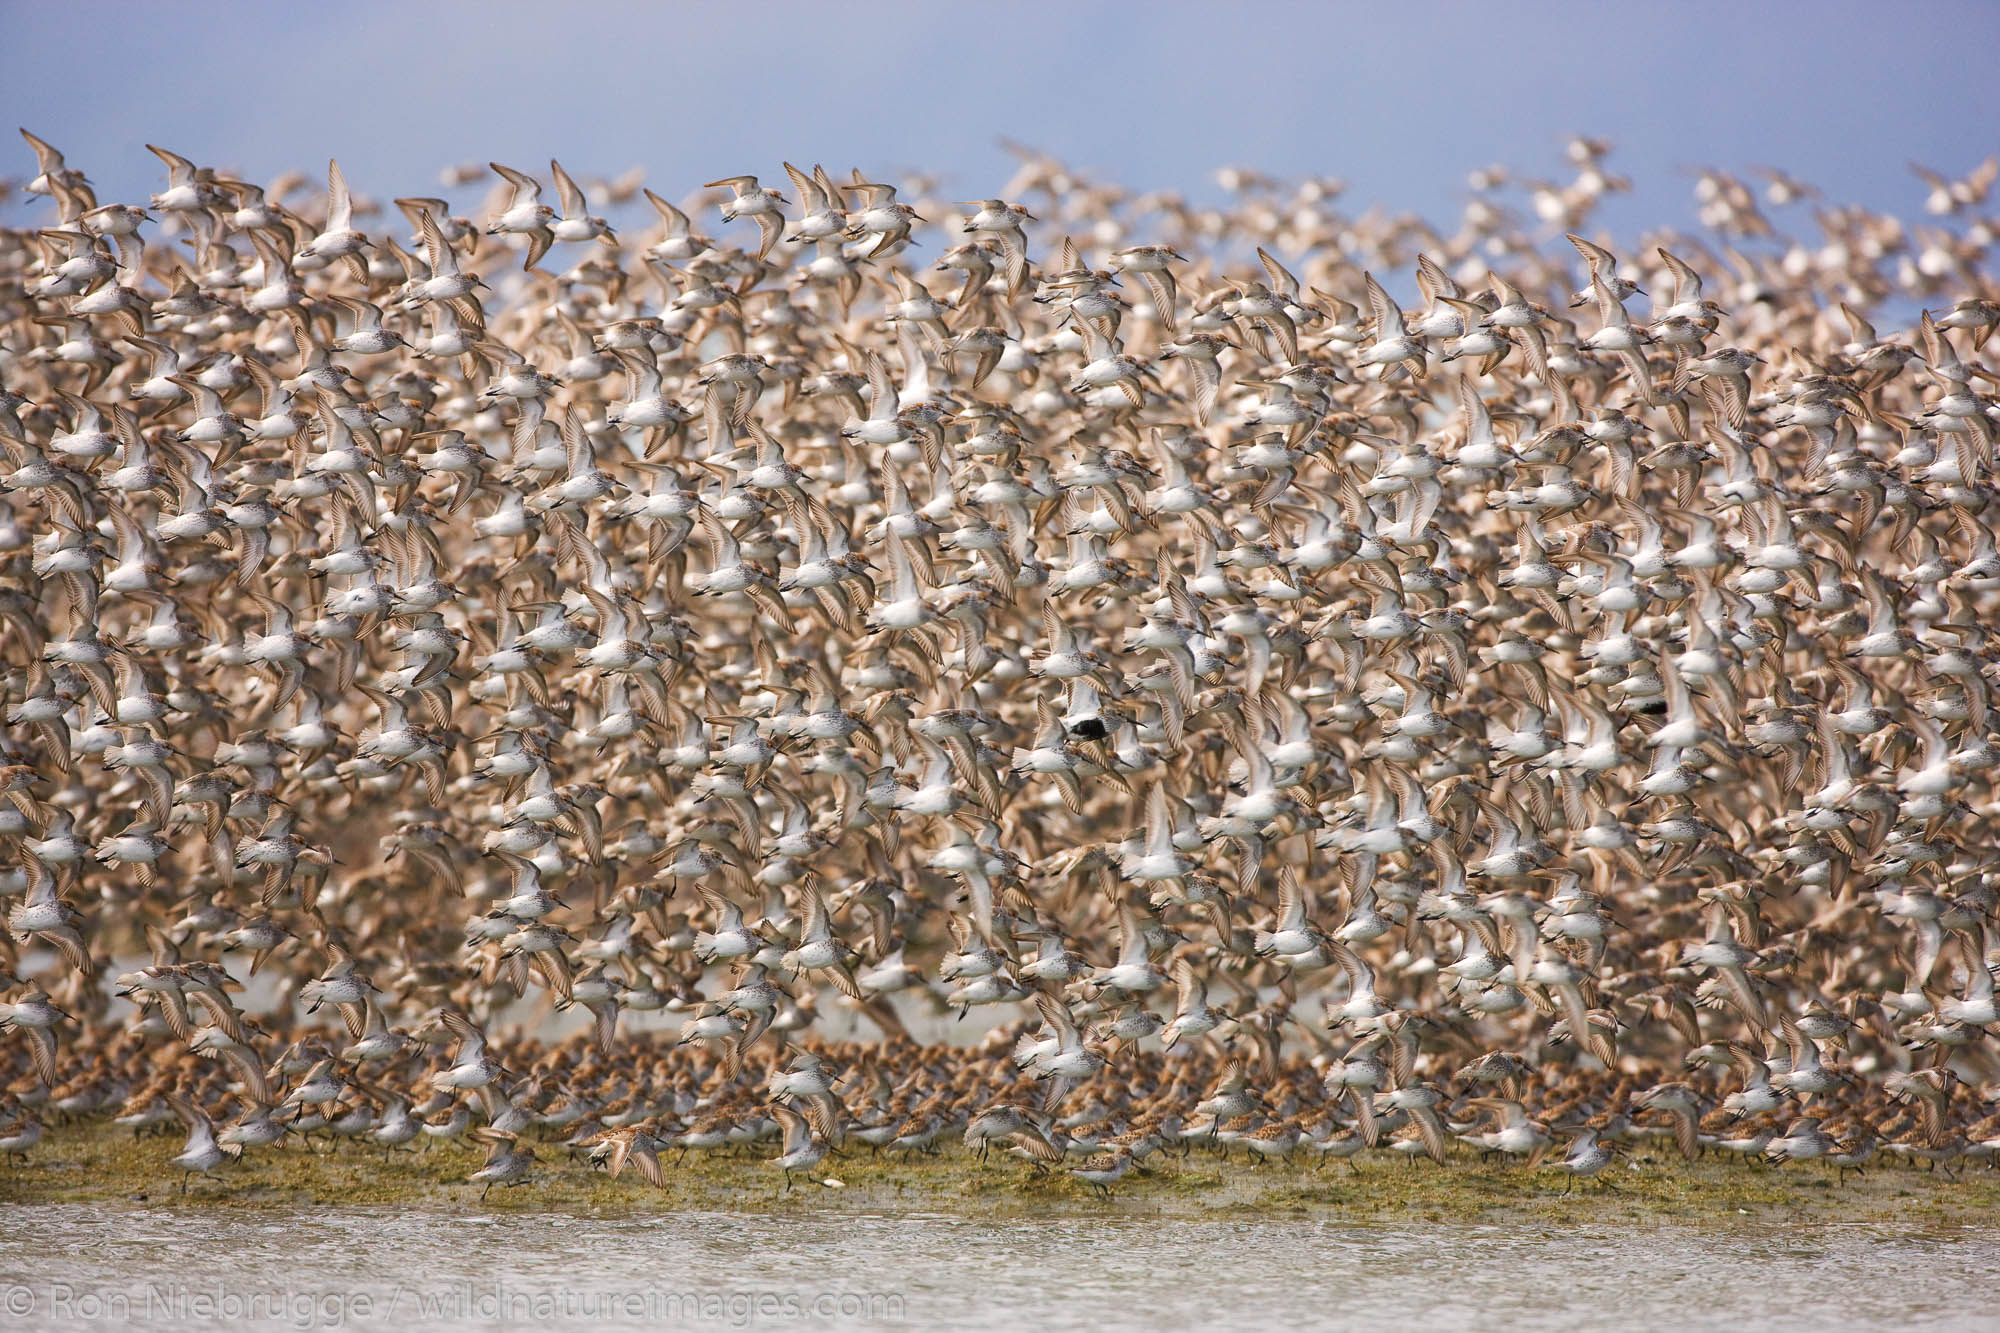 Shorebird migration on the Copper River Delta, Chugach National Forest, Cordova, Alaska